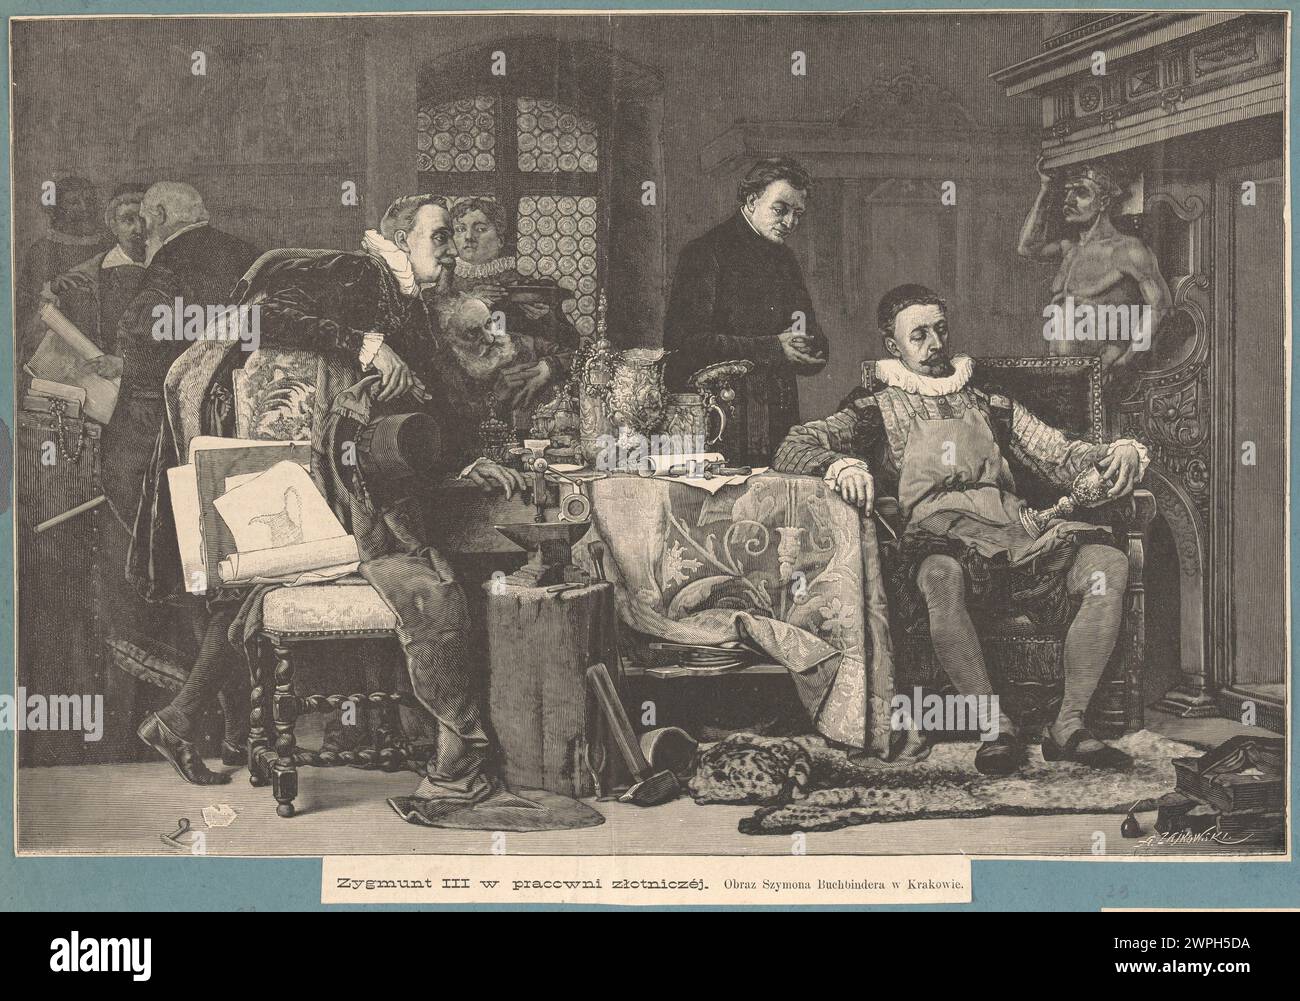 Zygmunt III in the goldsmith's studio; Buchbinder, Szymon (1853-1922), Weekly Ilustrowany (Warsaw; Publisher; 1859-1939); 1883 (1883-00-00-1883-00-00); Stock Photo